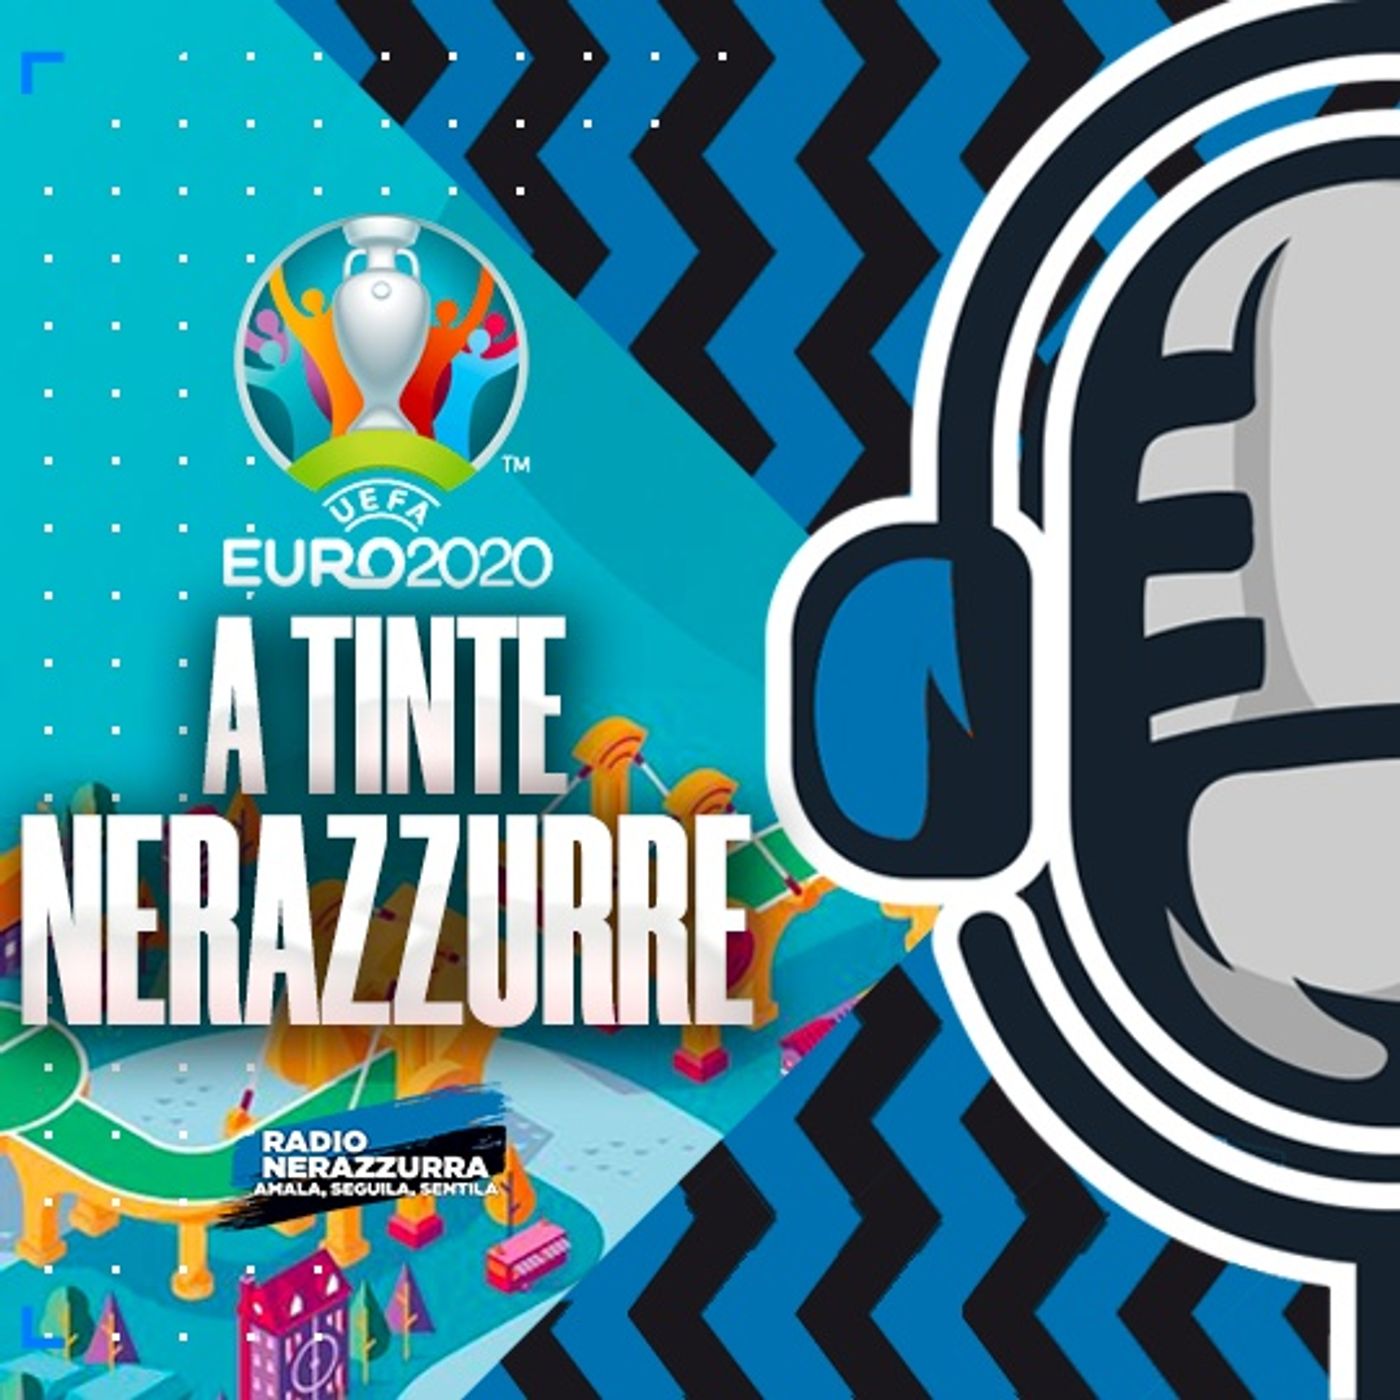 Euro 2020 - Gironi: 2ª Giornata